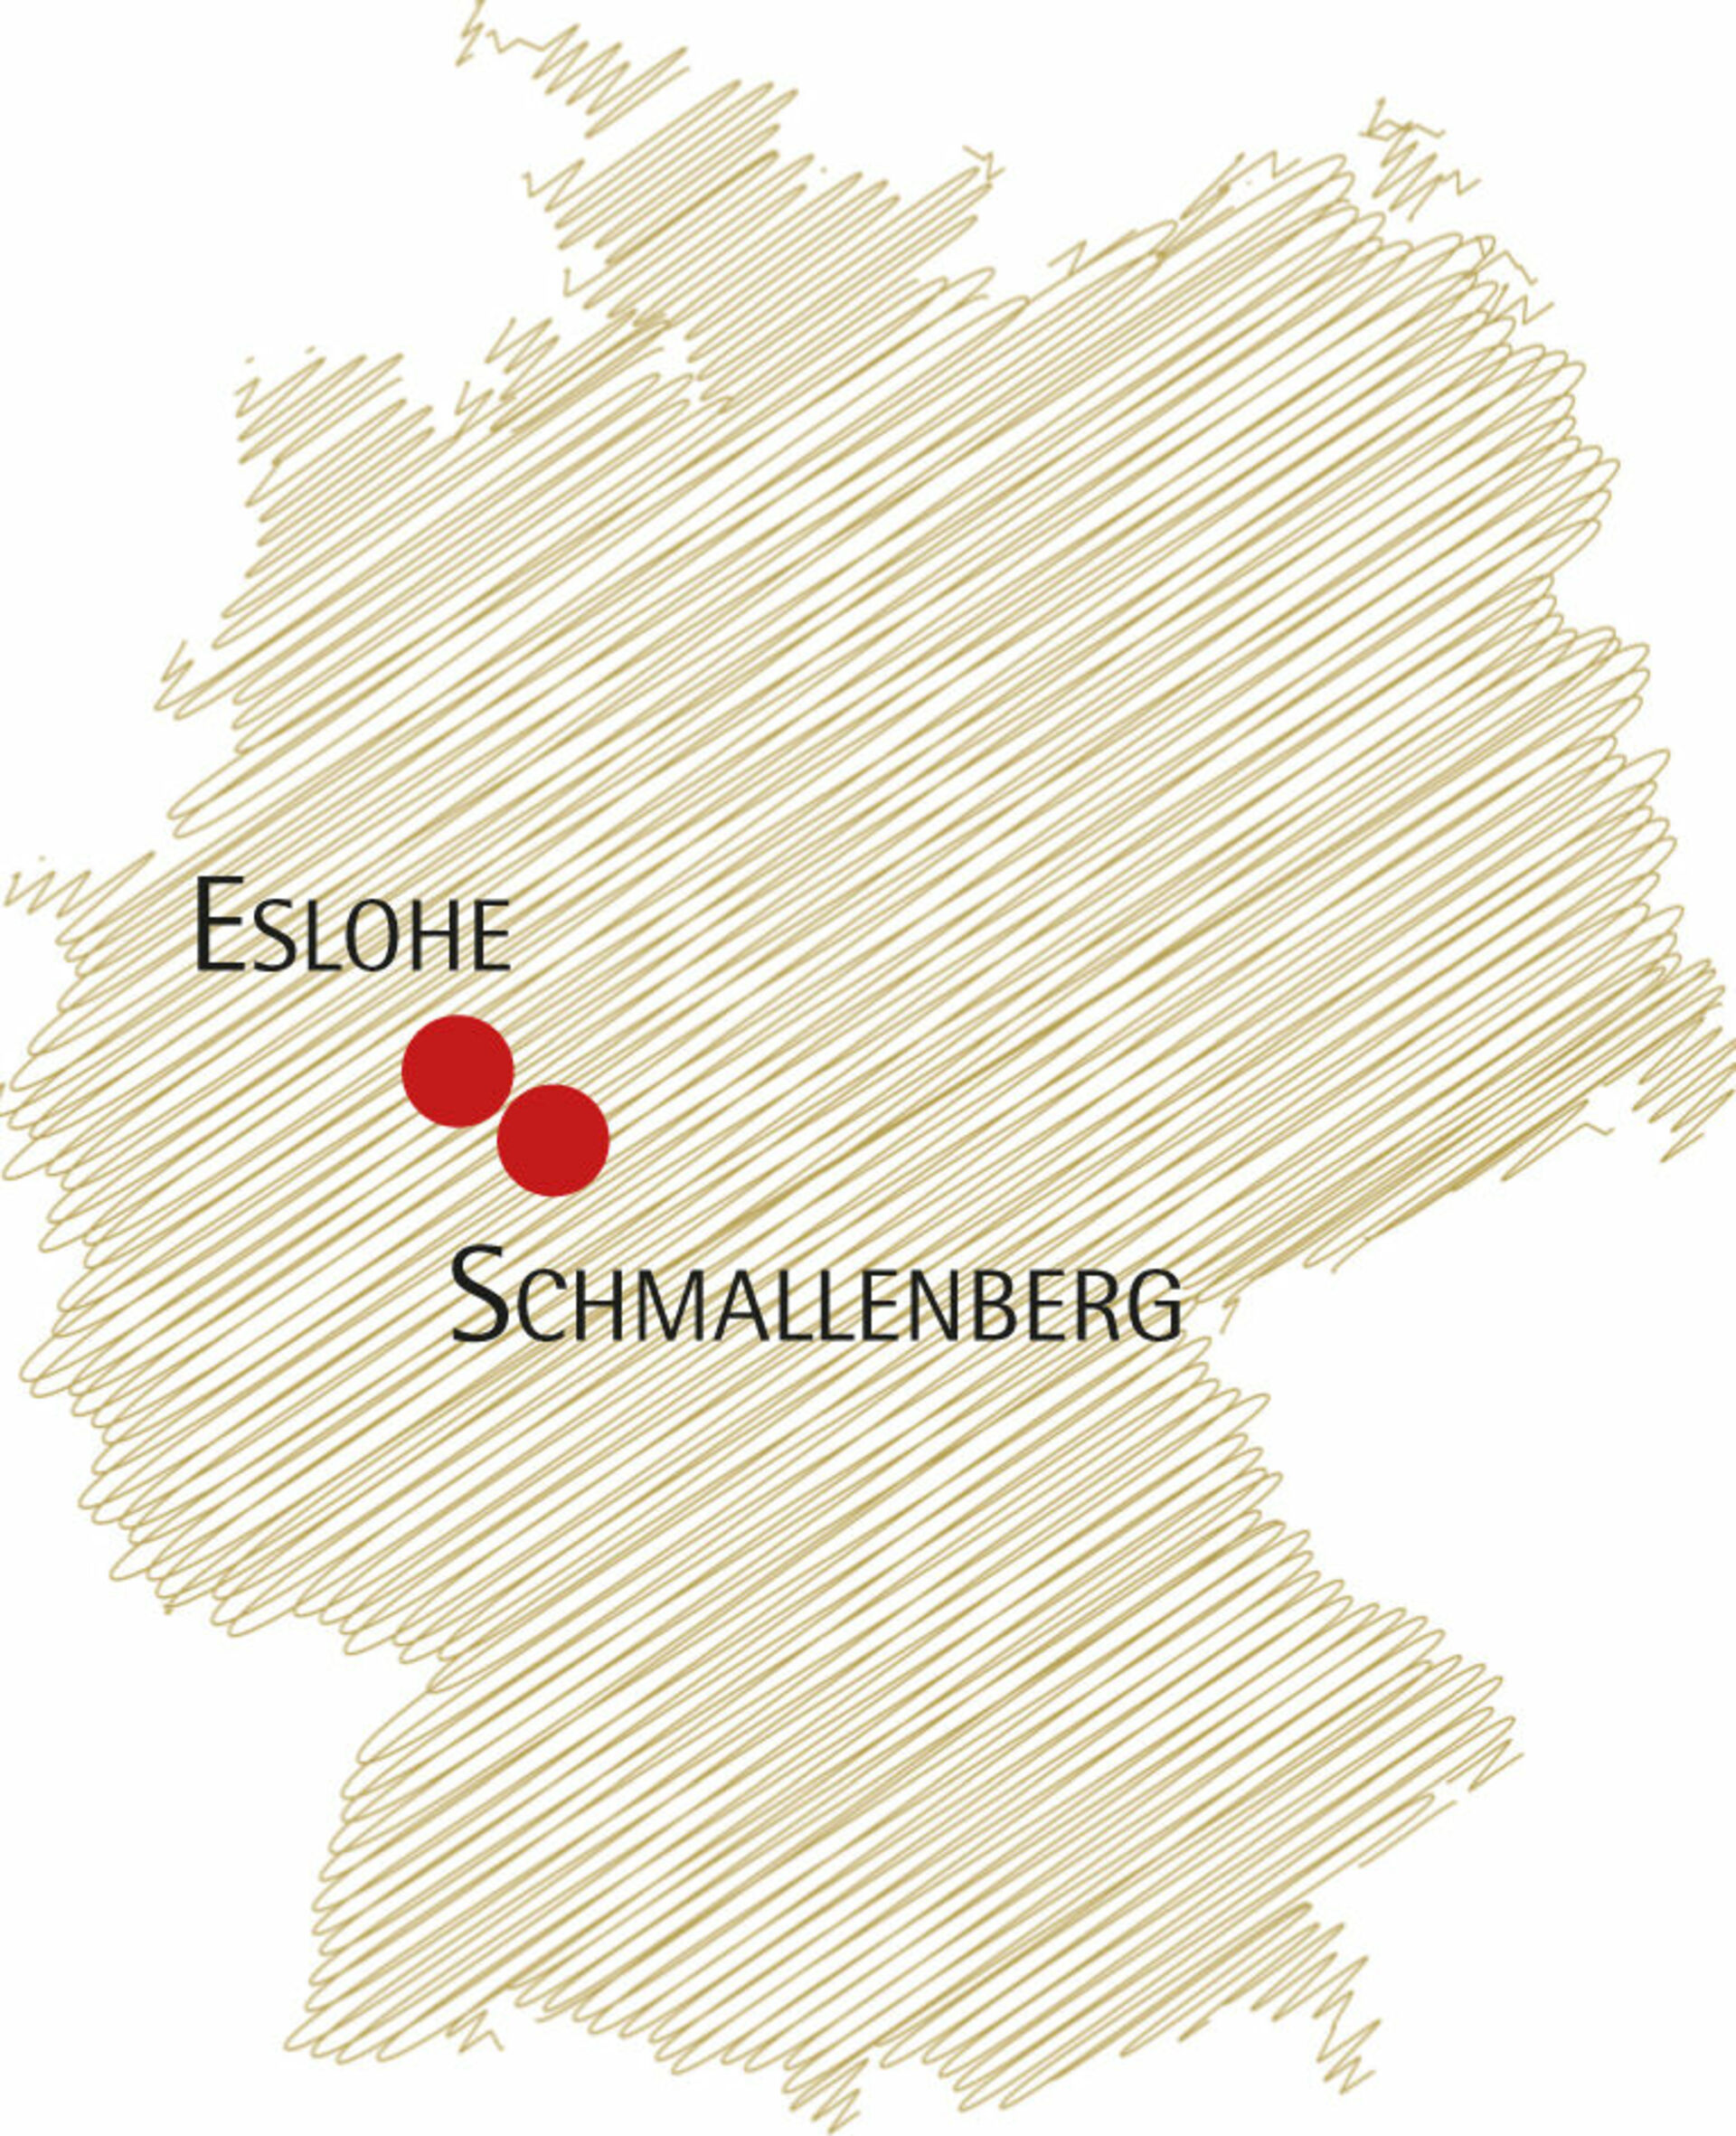 Lage des Schmallenberger Sauerlandes